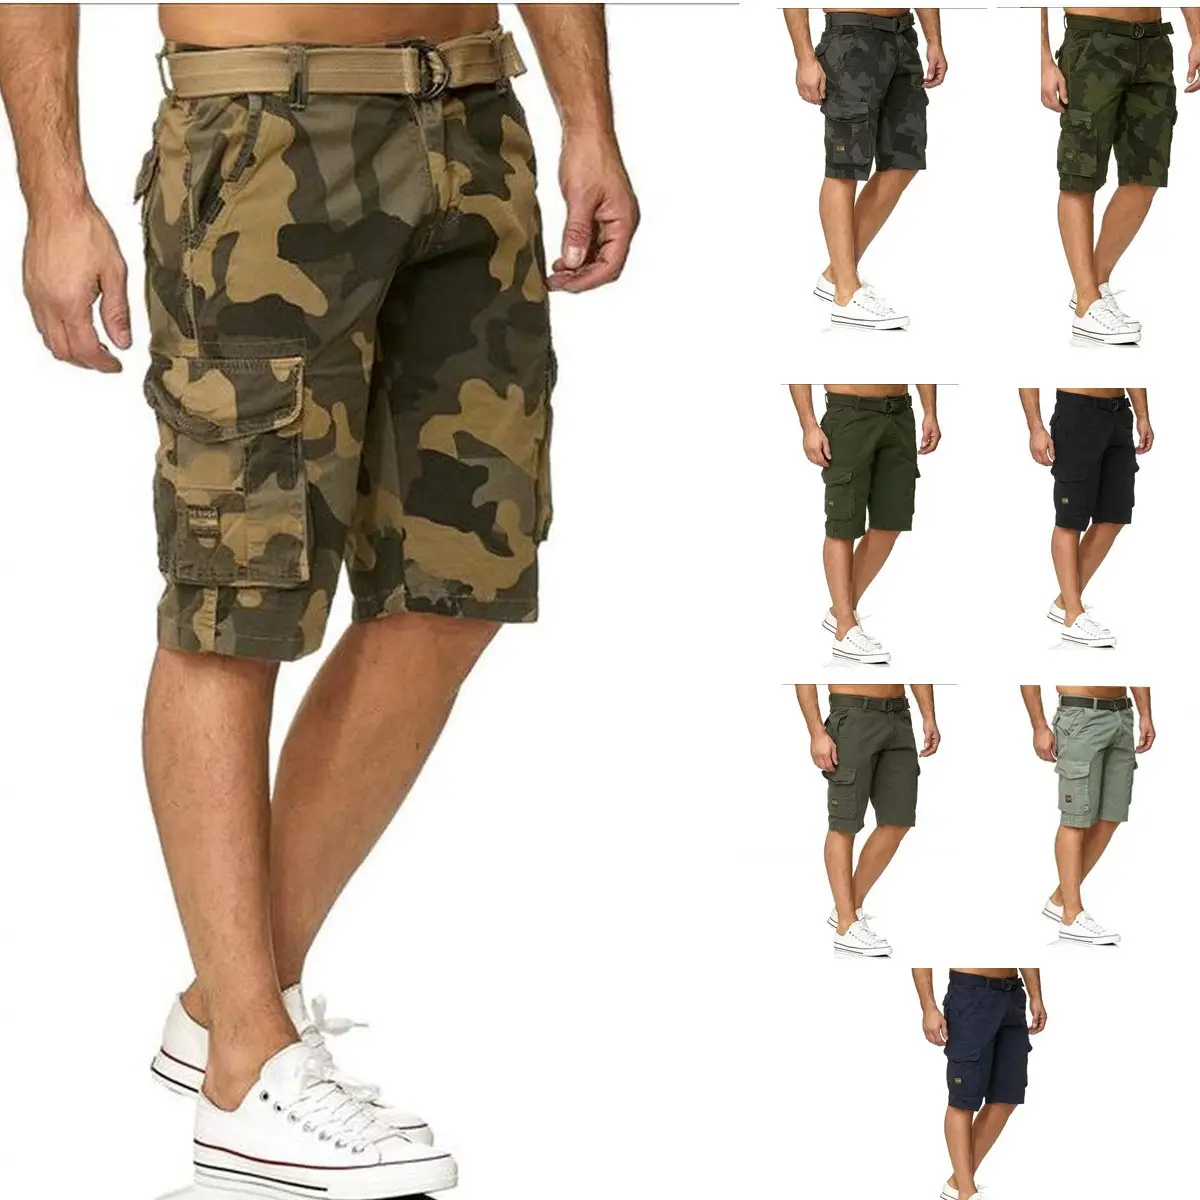 Oem Mannen Camouflage Shorts Toevallige Mannelijke Cargo Shorts Knielengte Heren Korte Broek